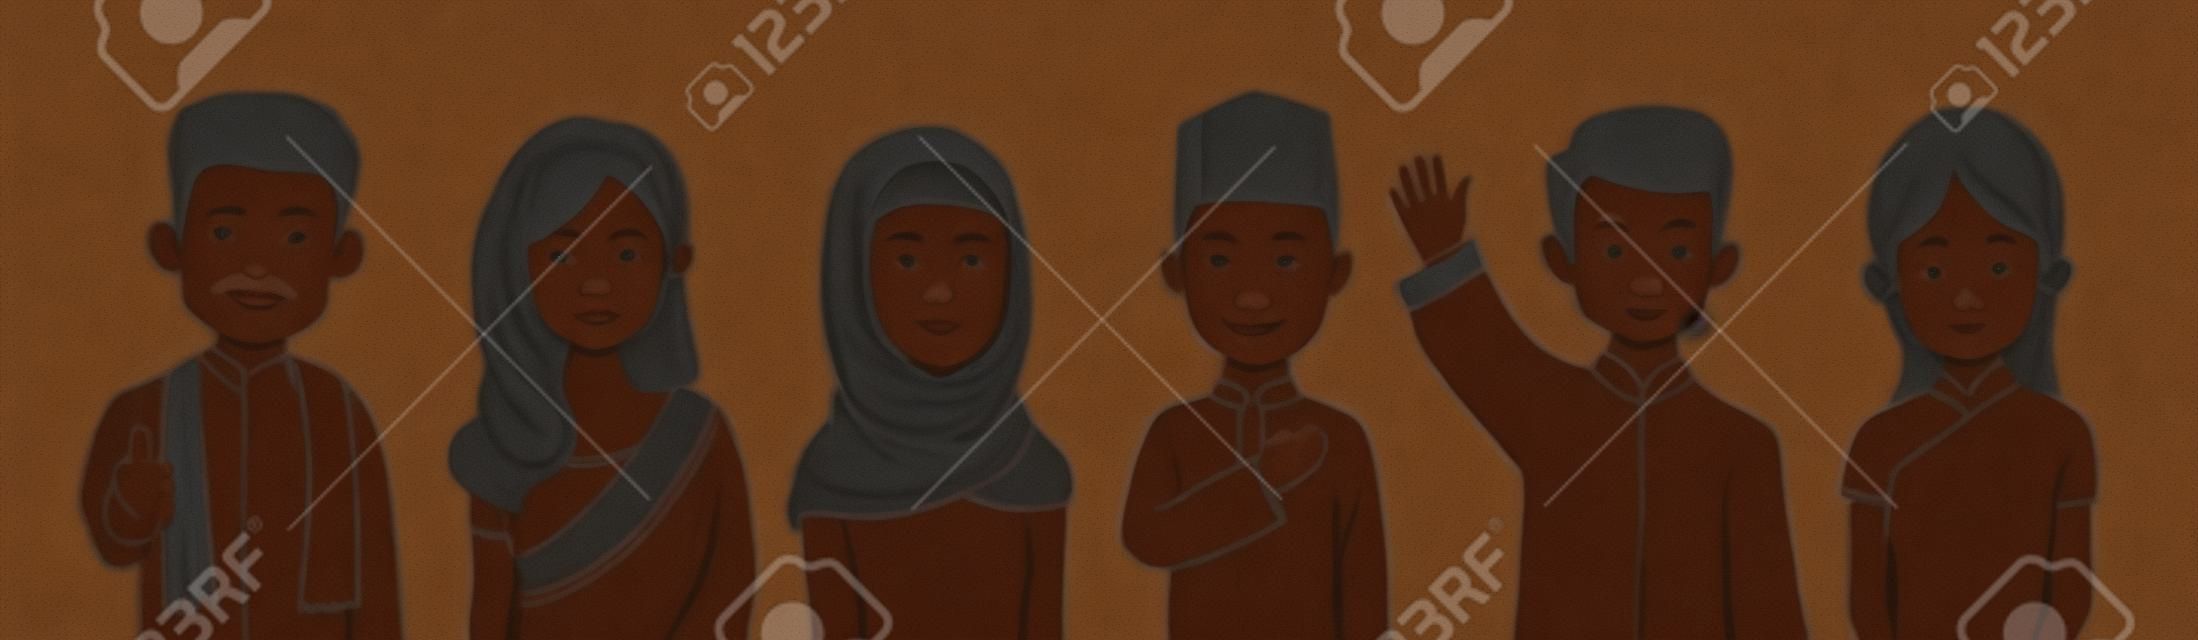 말레이시아의 혼혈 남성과 여성의 초상화